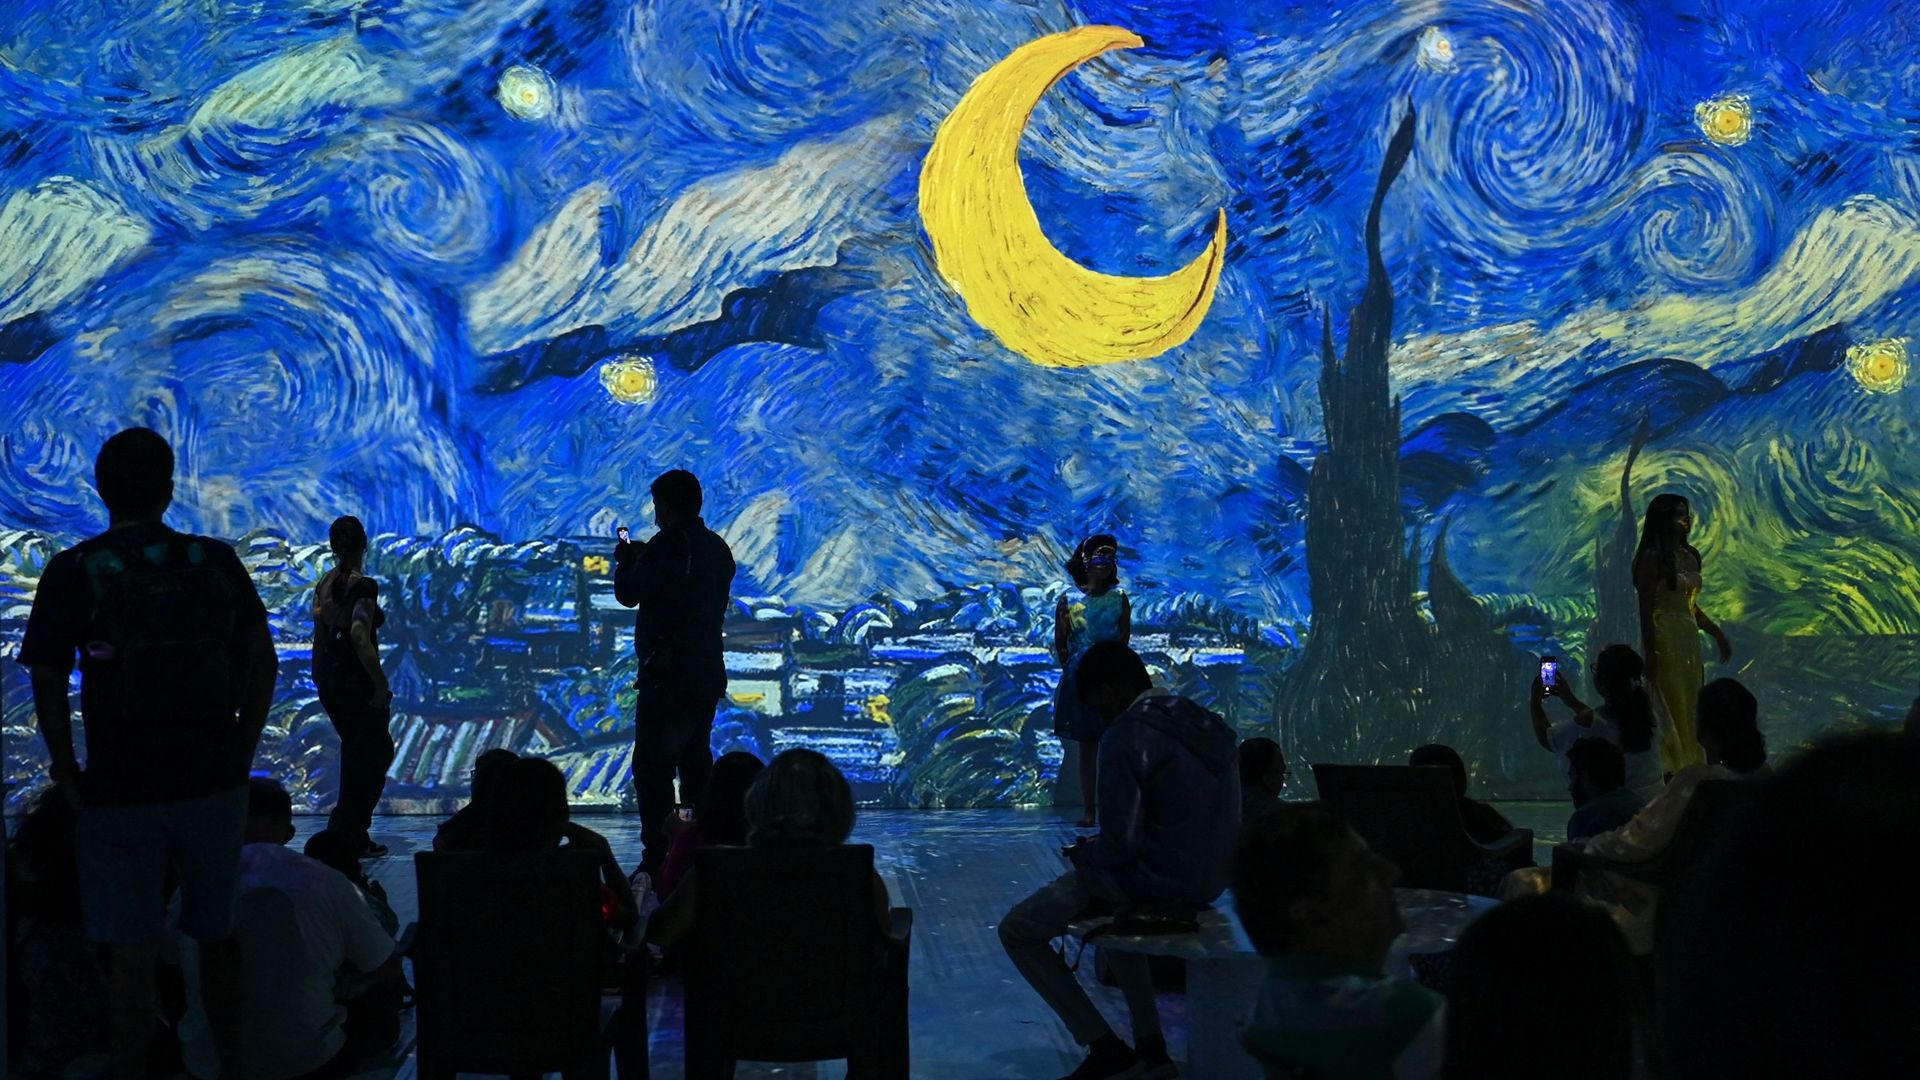 L'exposition "Van Gogh: The immersive experience" posera ses bagages pour la deuxième fois à Bruxelles à partir du 18 février.